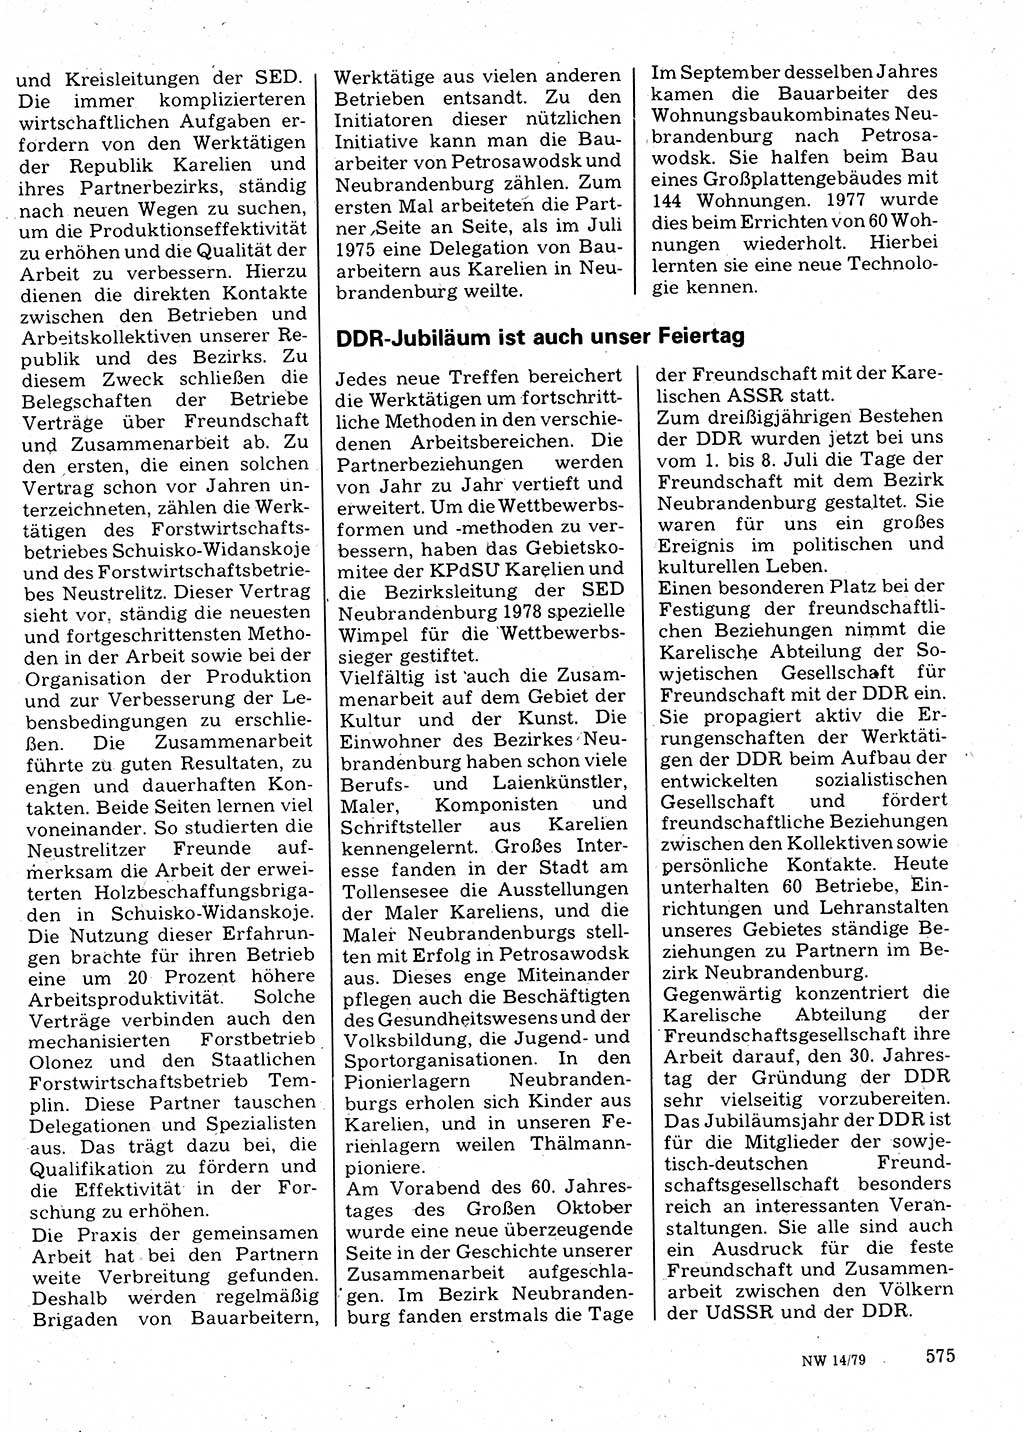 Neuer Weg (NW), Organ des Zentralkomitees (ZK) der SED (Sozialistische Einheitspartei Deutschlands) für Fragen des Parteilebens, 34. Jahrgang [Deutsche Demokratische Republik (DDR)] 1979, Seite 575 (NW ZK SED DDR 1979, S. 575)